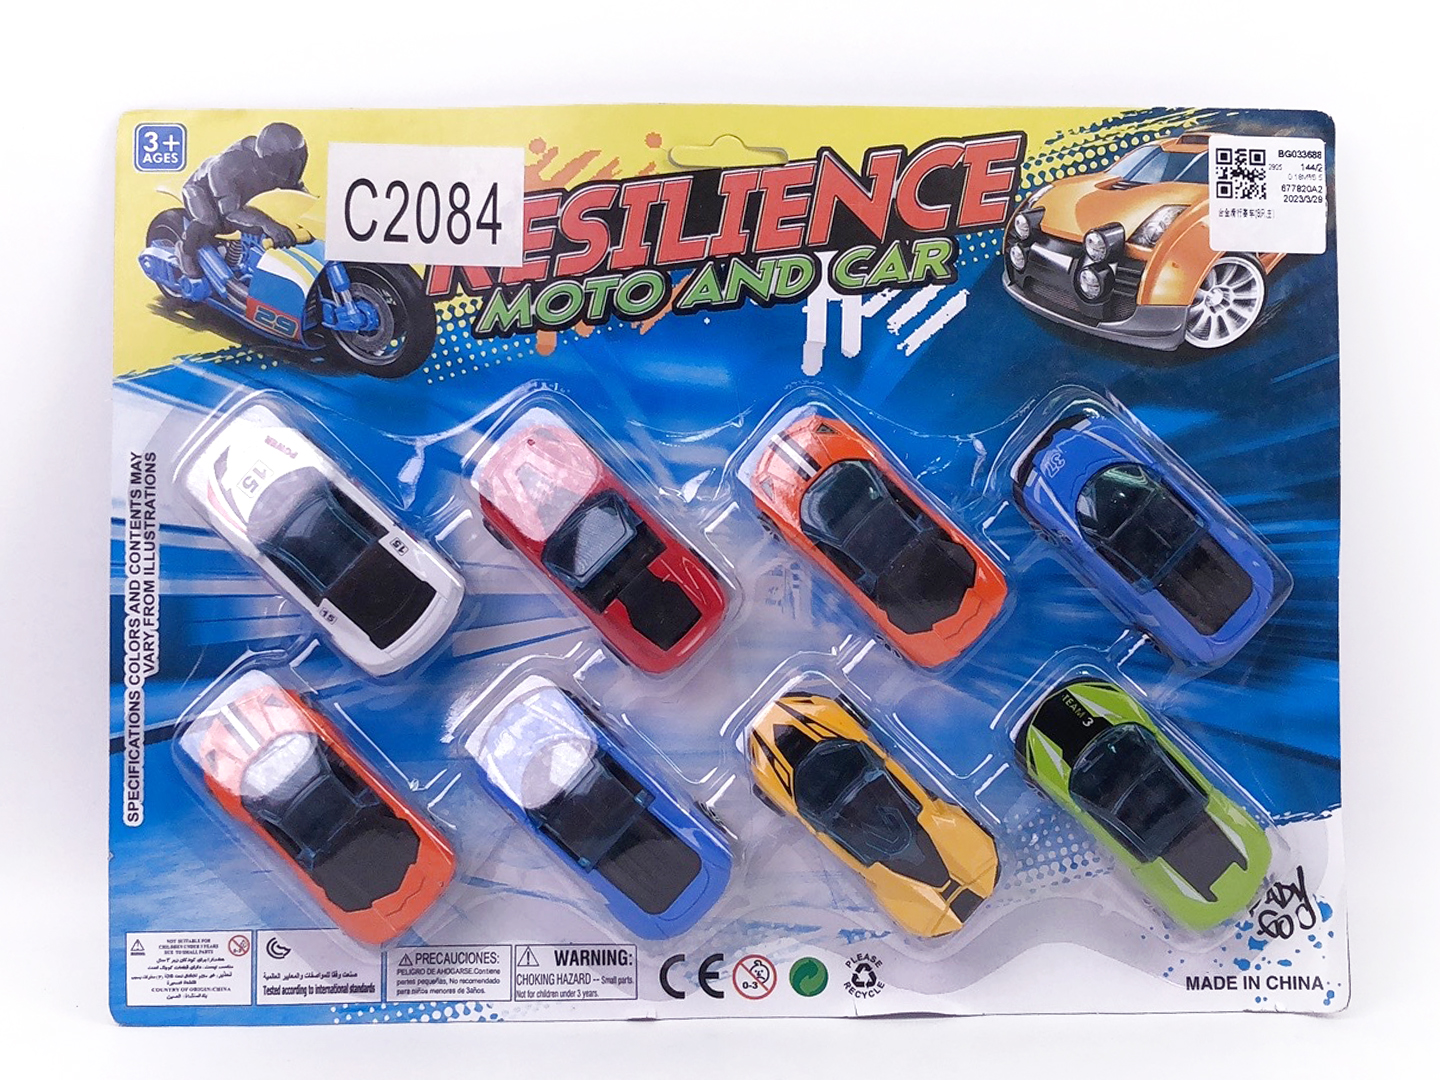 Die Cast Racing Car Free Wheel(8in1) toys